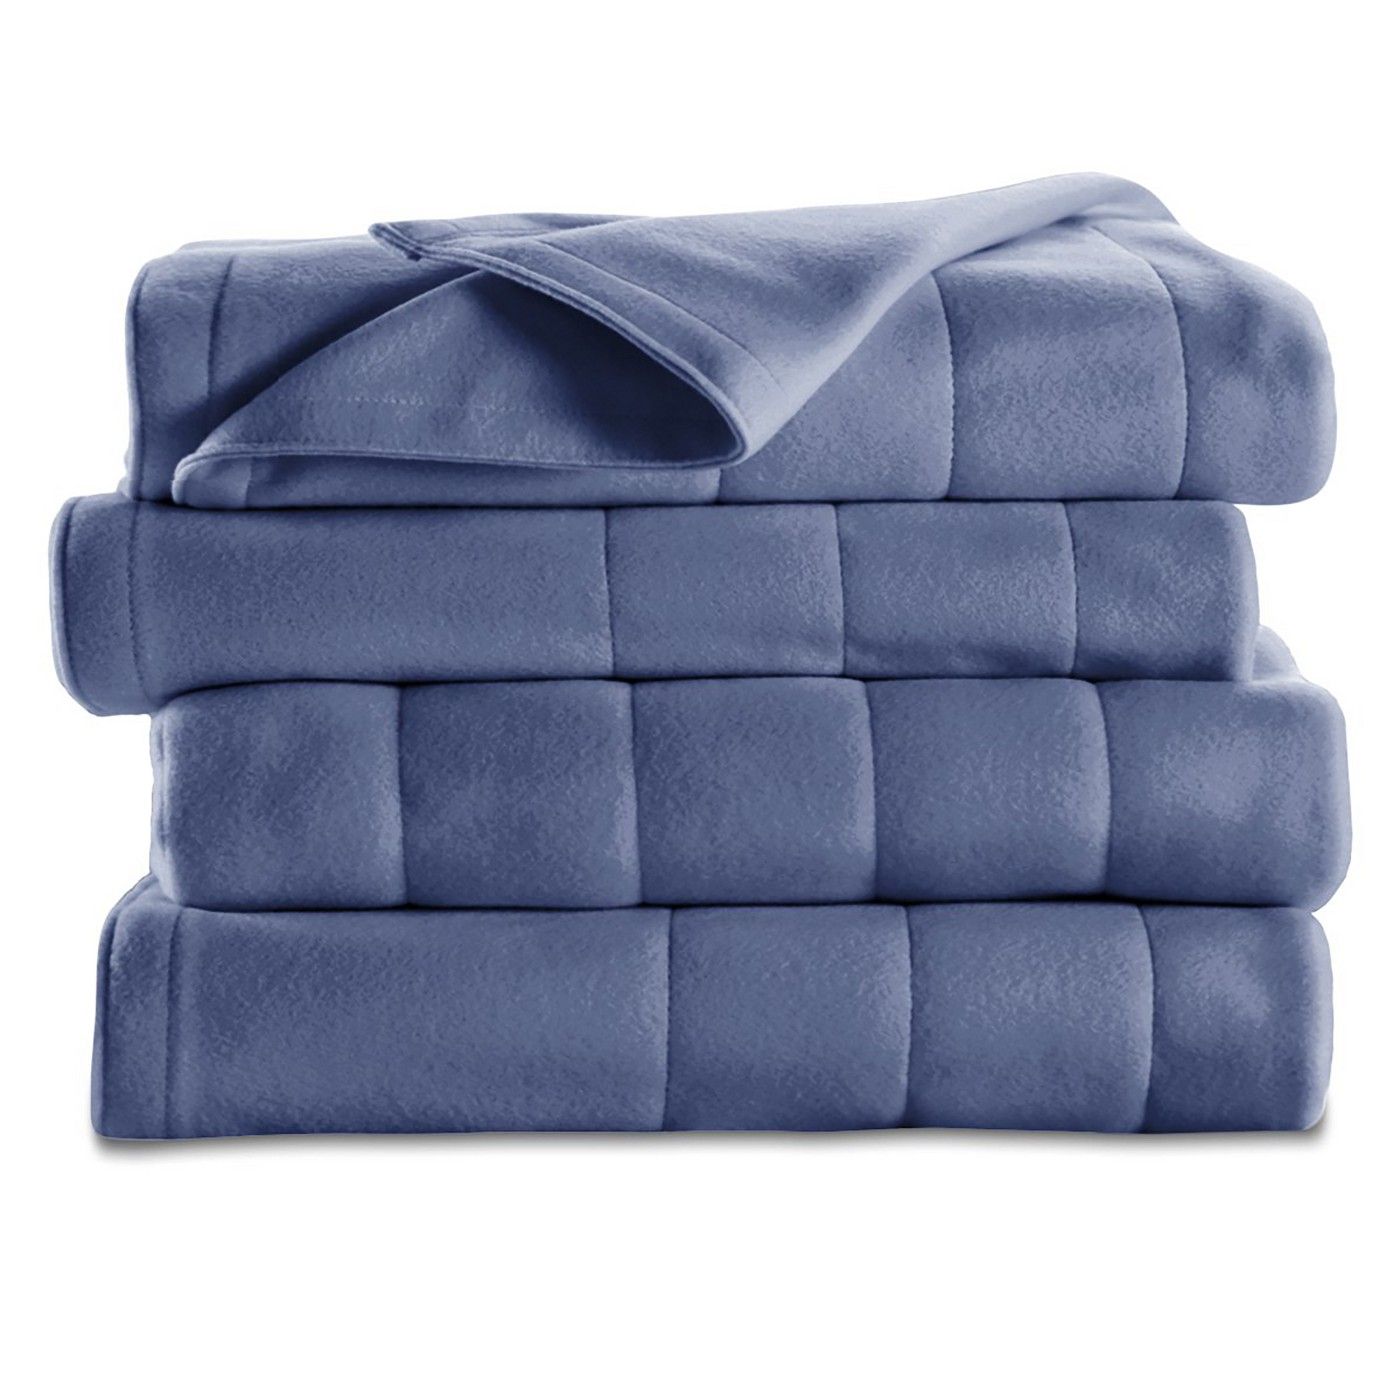 Quilted Fleece Heated Blanket